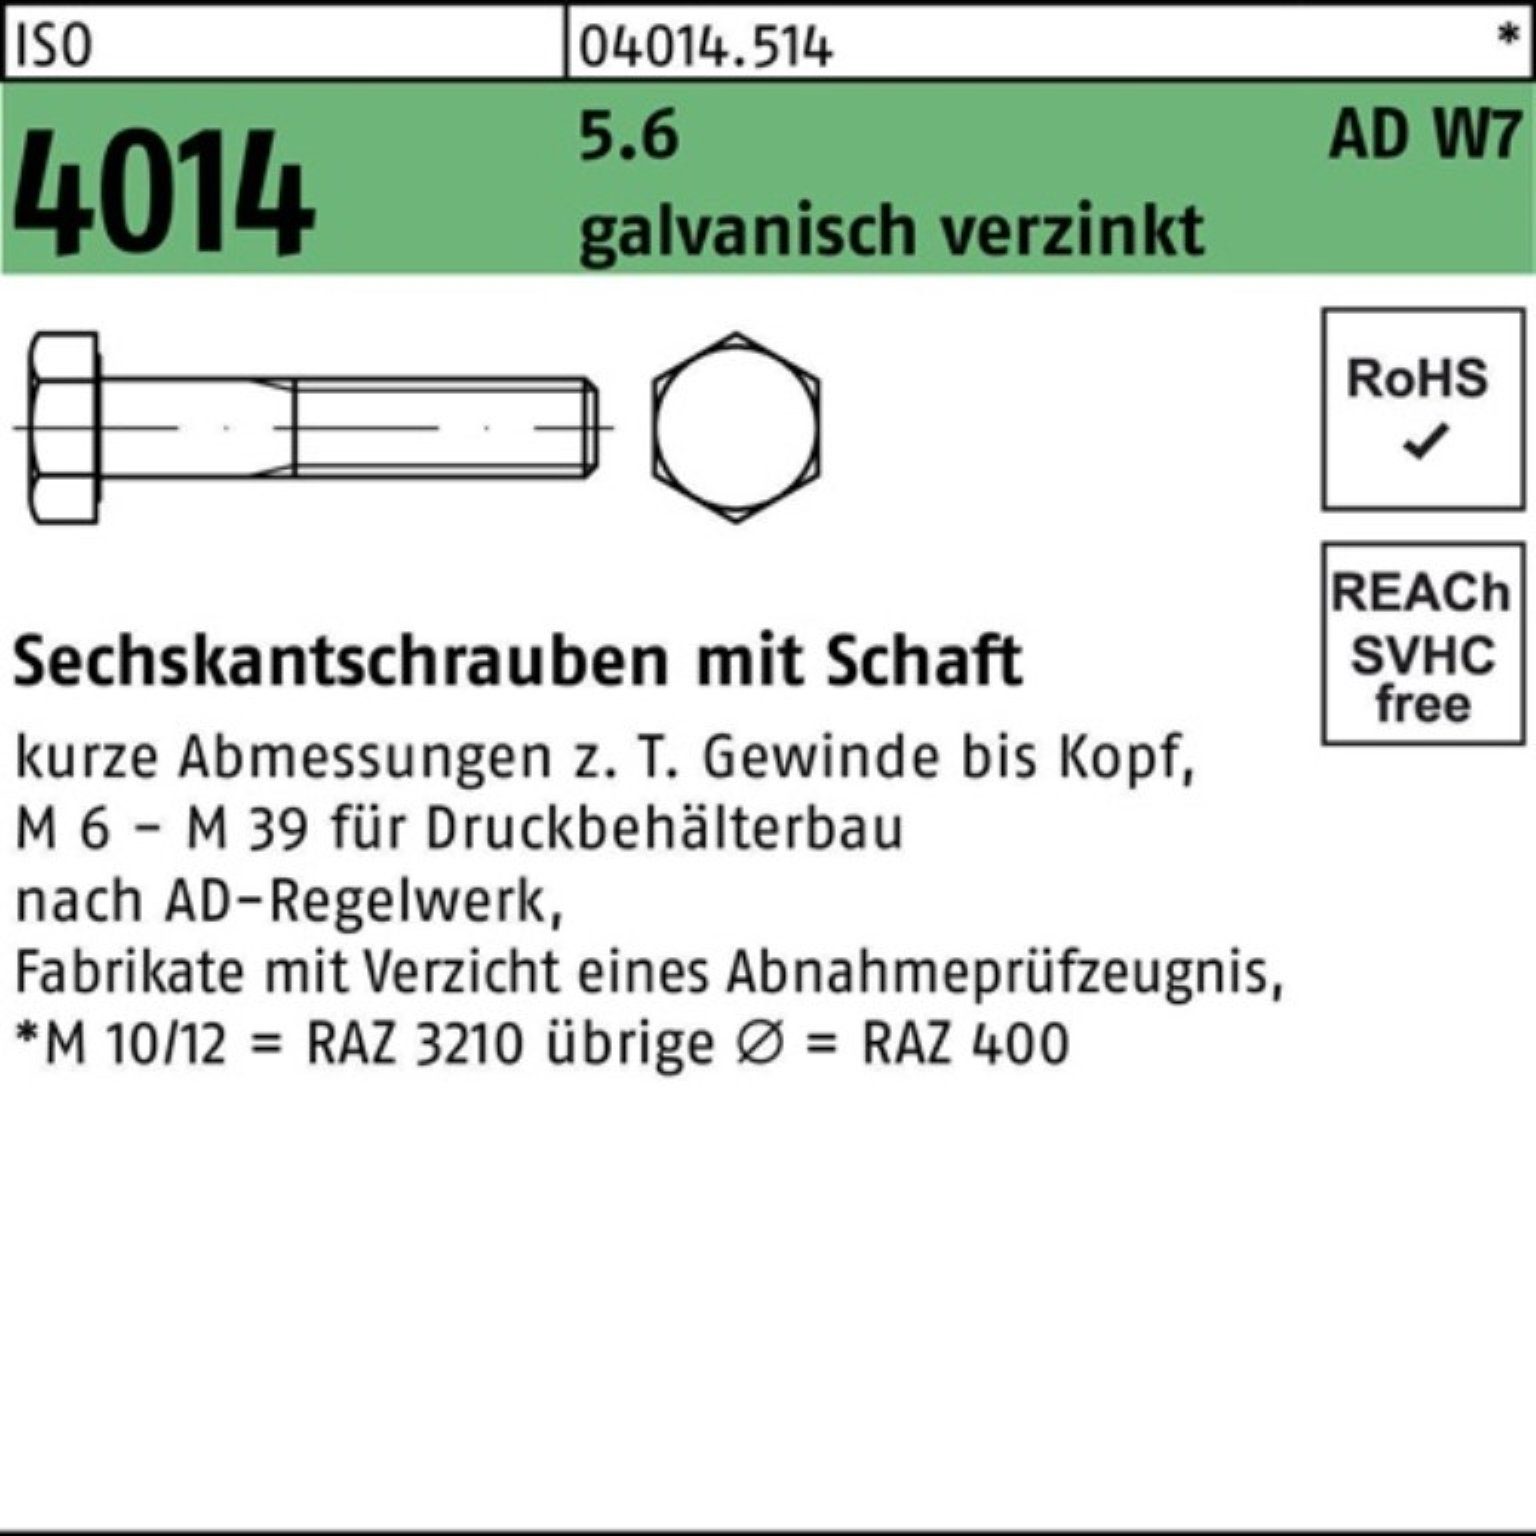 Bufab Sechskantschraube 100er W7 galv.verz 110 4014 Schaft Sechskantschraube M12x 5.6 Pack ISO